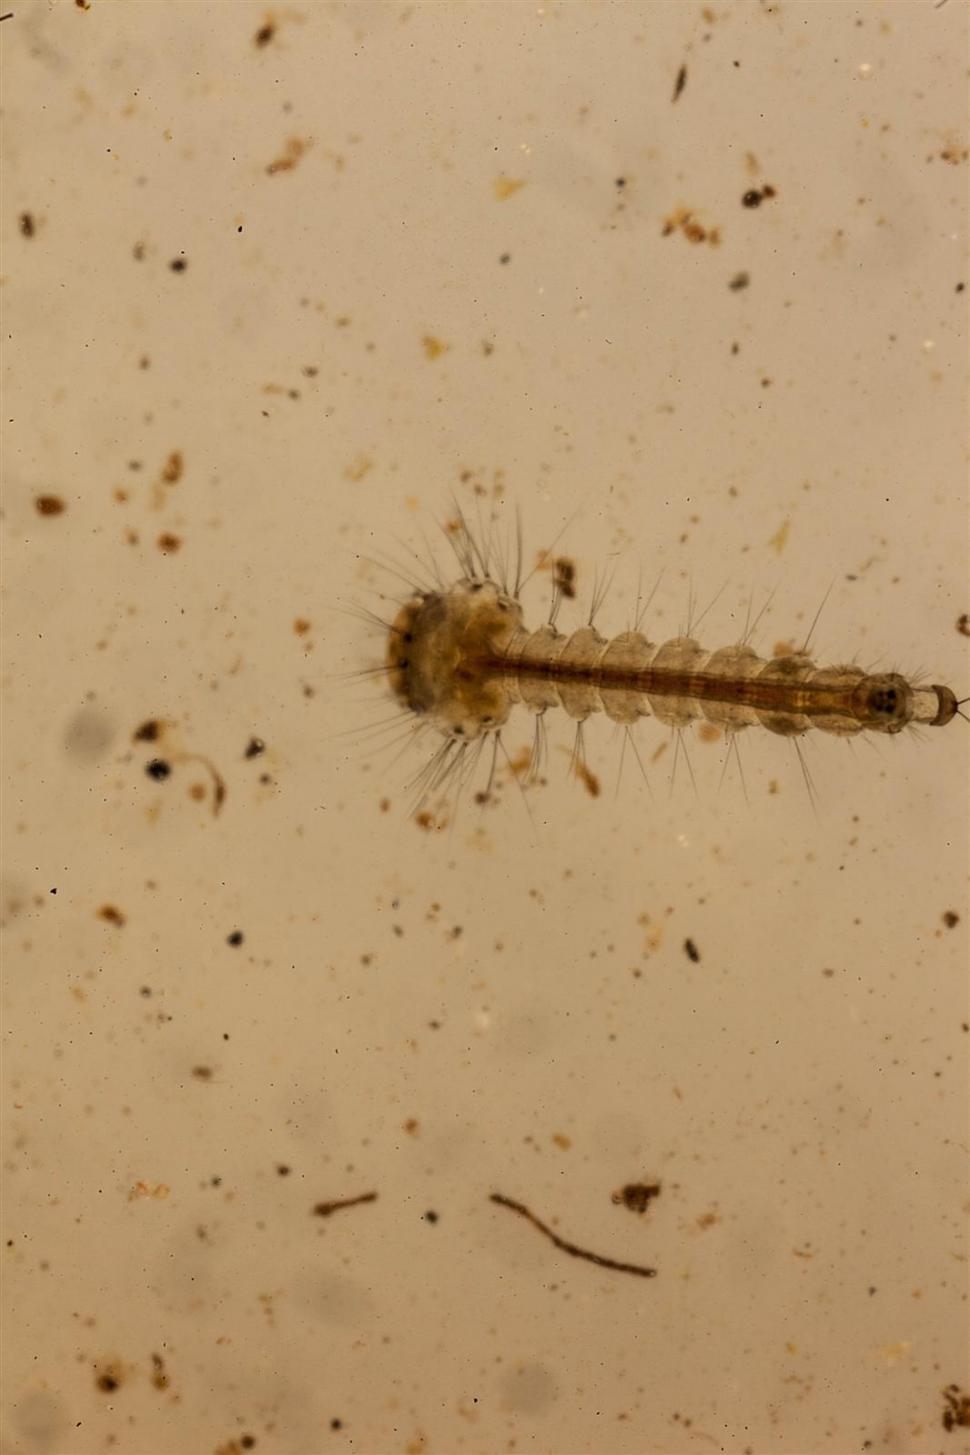 Free Image of macro shot of mosquito larva 